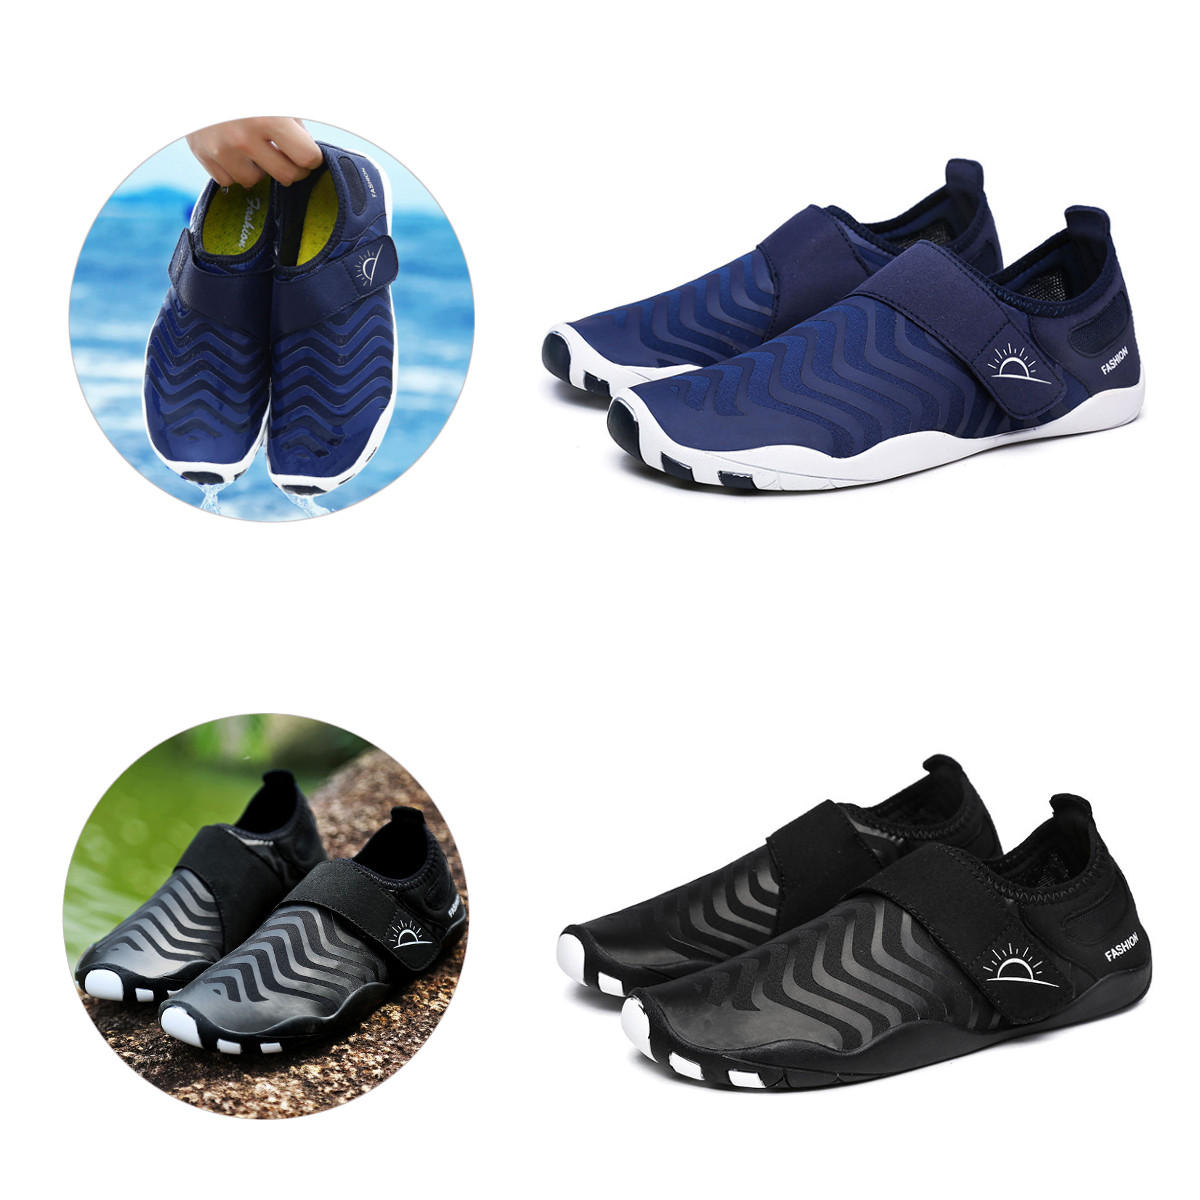 Zapatos de vadeo ultraligeros a rayas, de secado rápido, de fácil deslizamiento, ideales para deportes al aire libre, natación y yoga.